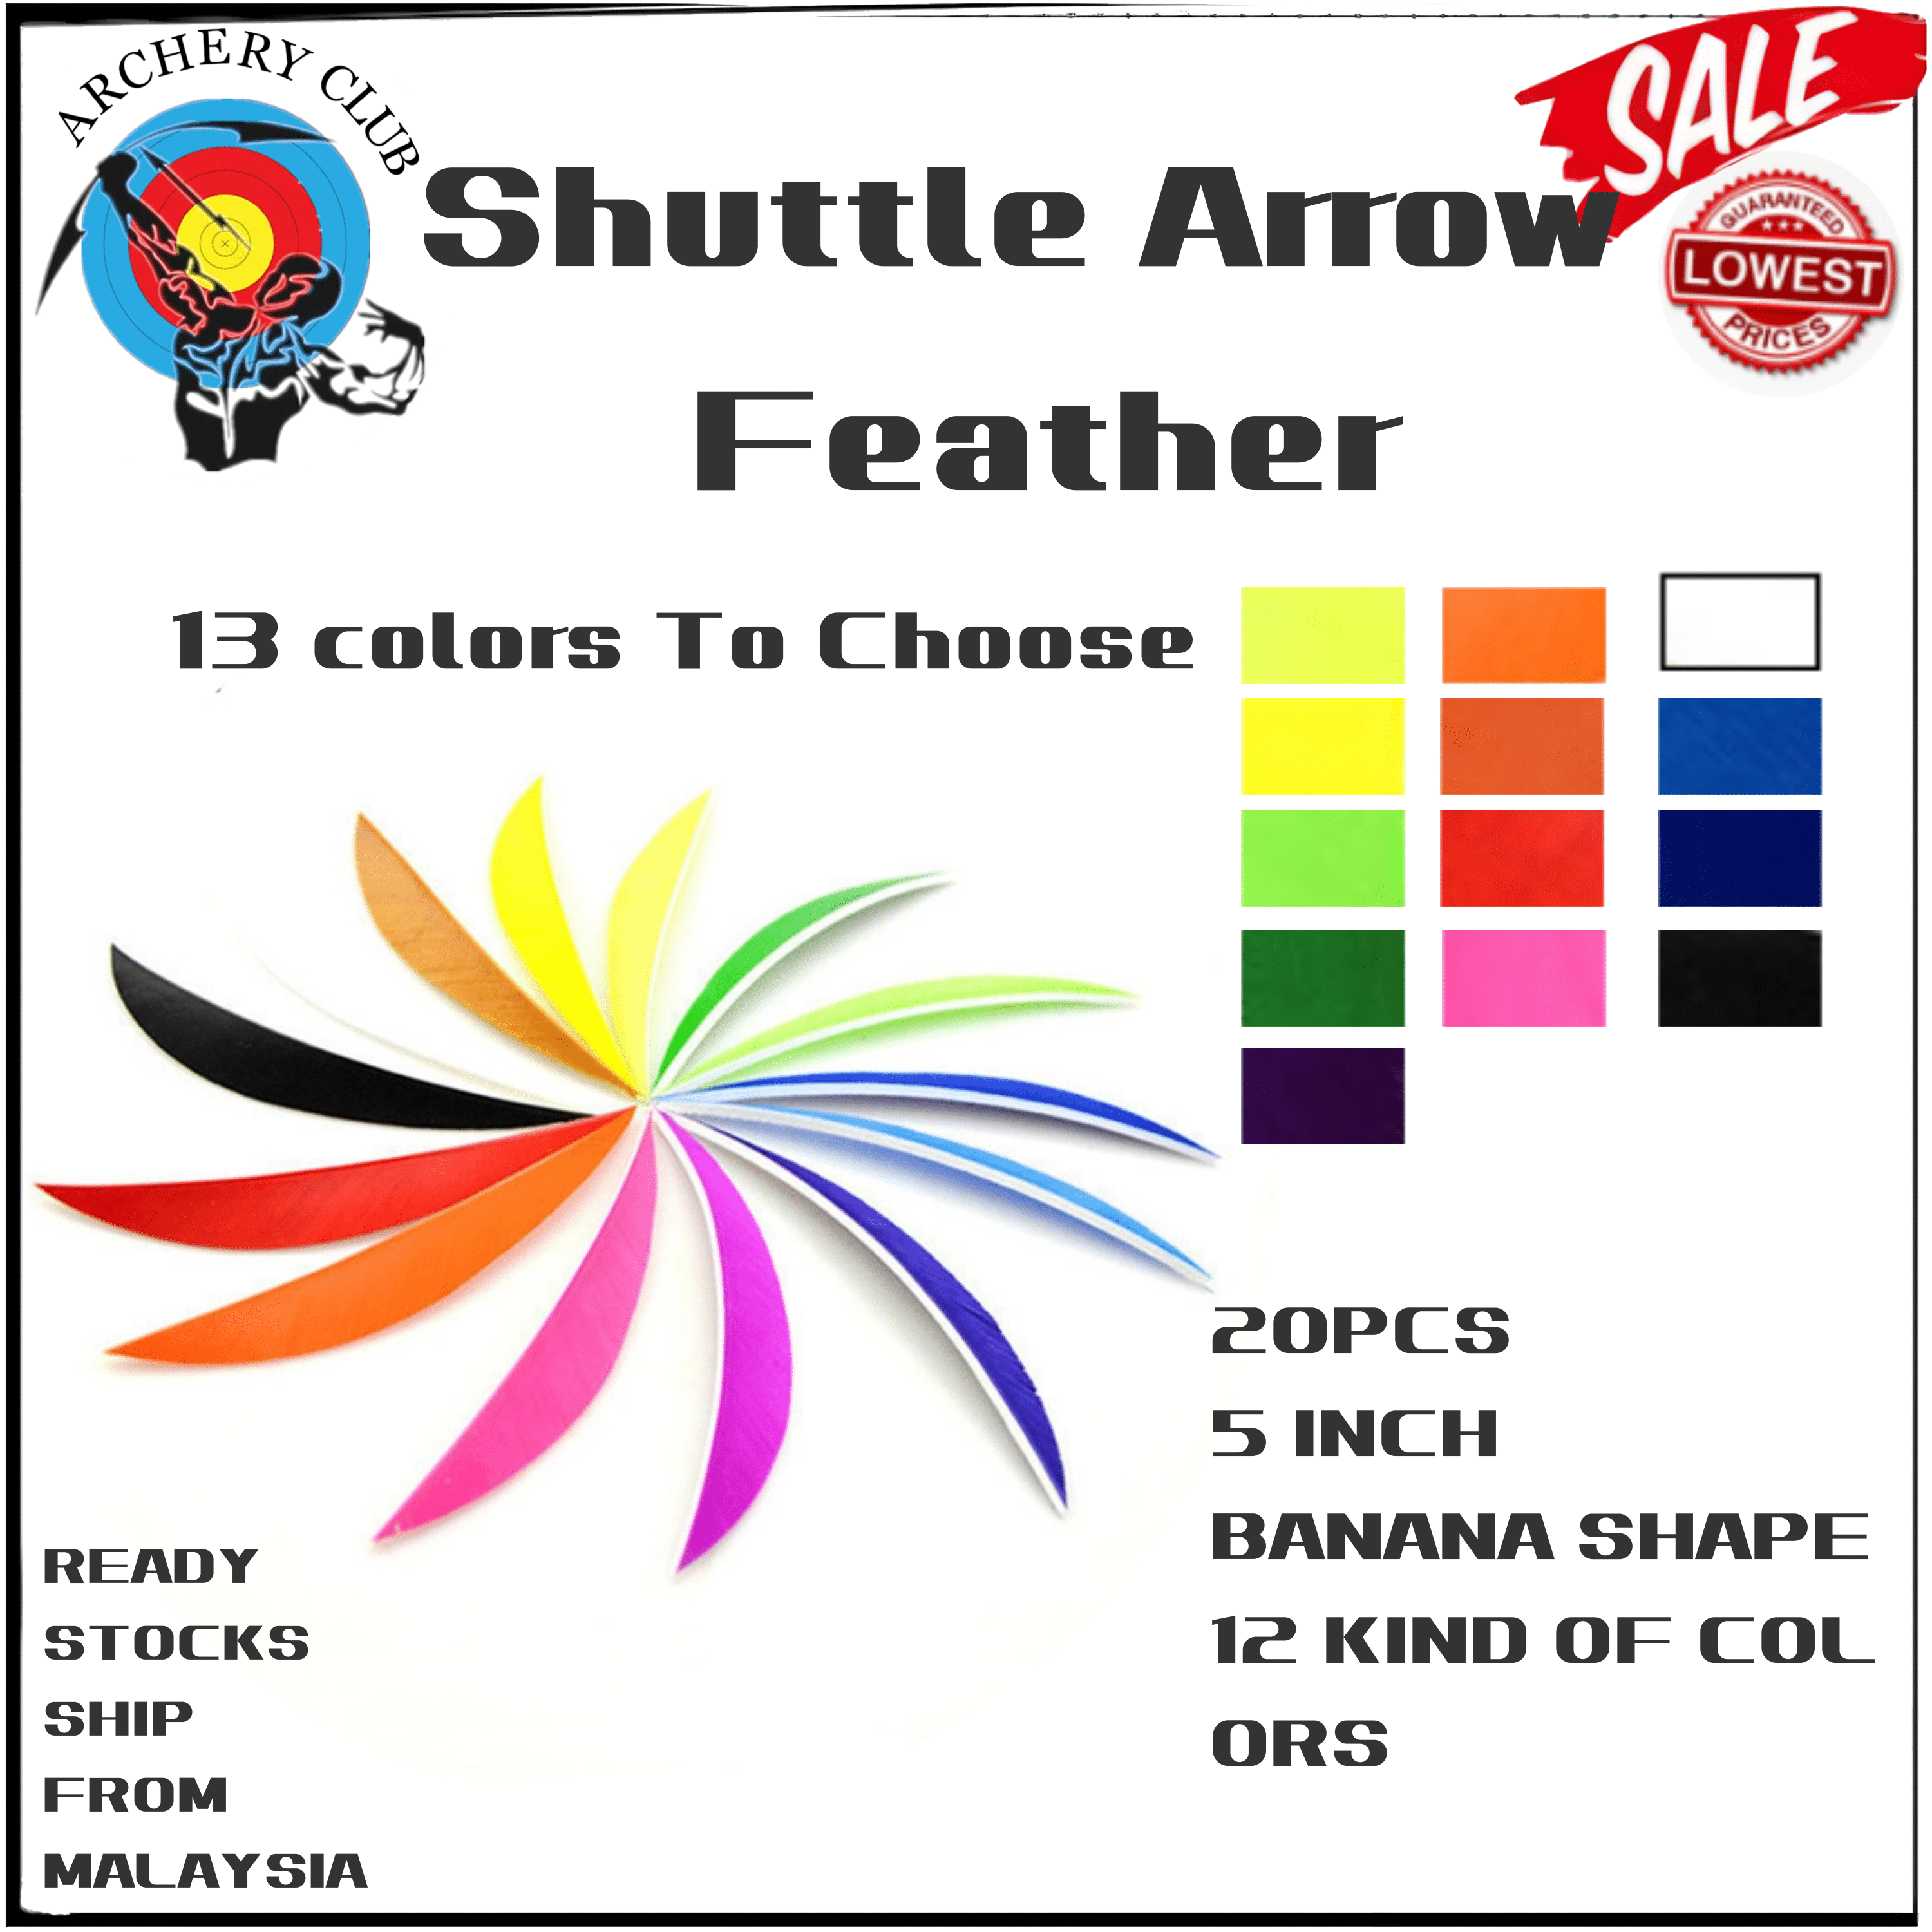 20PCS 5''Shuttle Arrow Feather For DIY